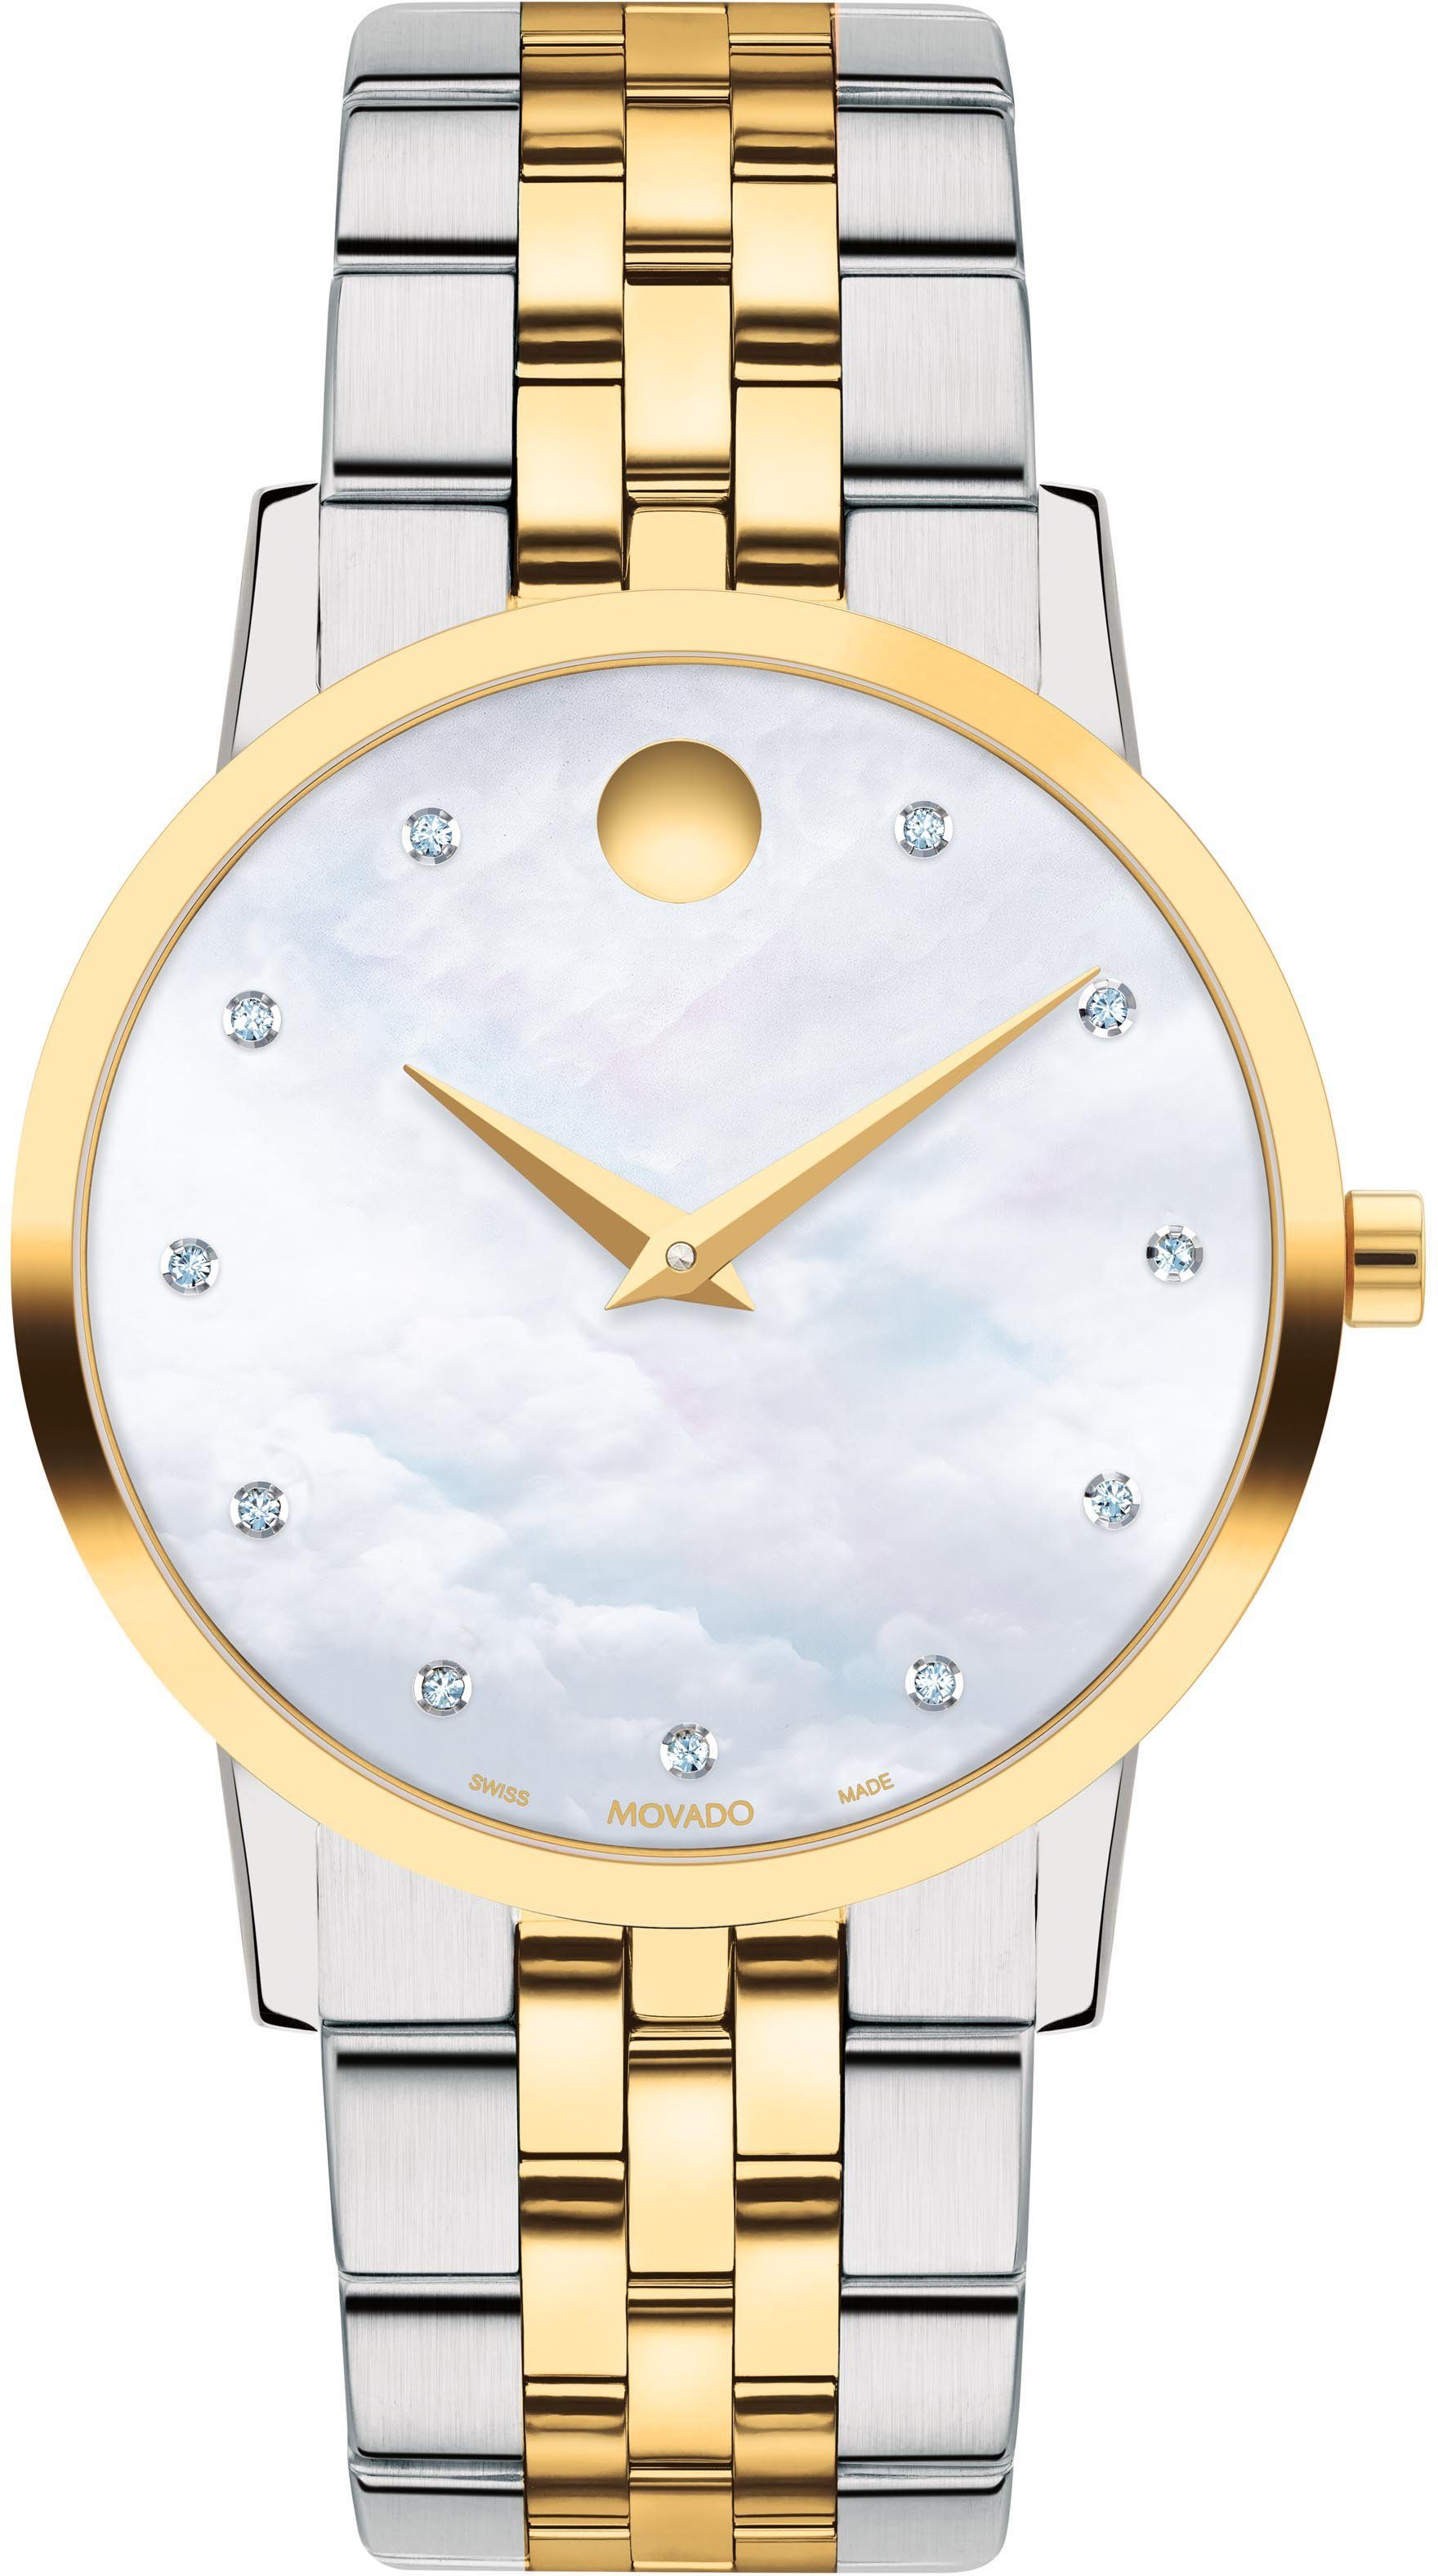 MOVADO Schweizer Uhr MUSEUM, 0607630, Quarzuhr, Armbanduhr, Damenuhr, Swiss Made, Diamant-Steine, Perlmutt